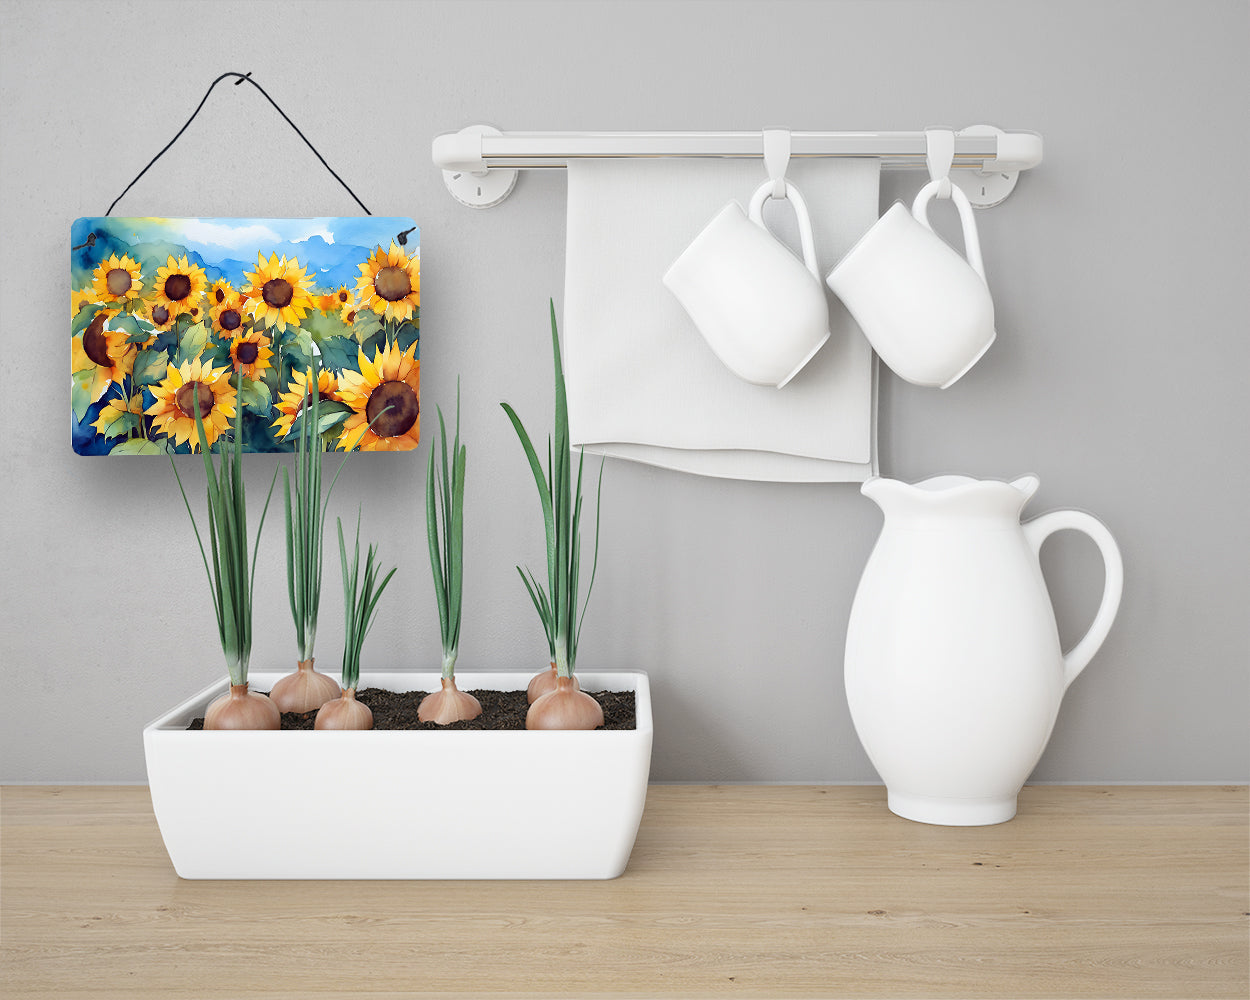 Sunflowers in Watercolor Wall or Door Hanging Prints